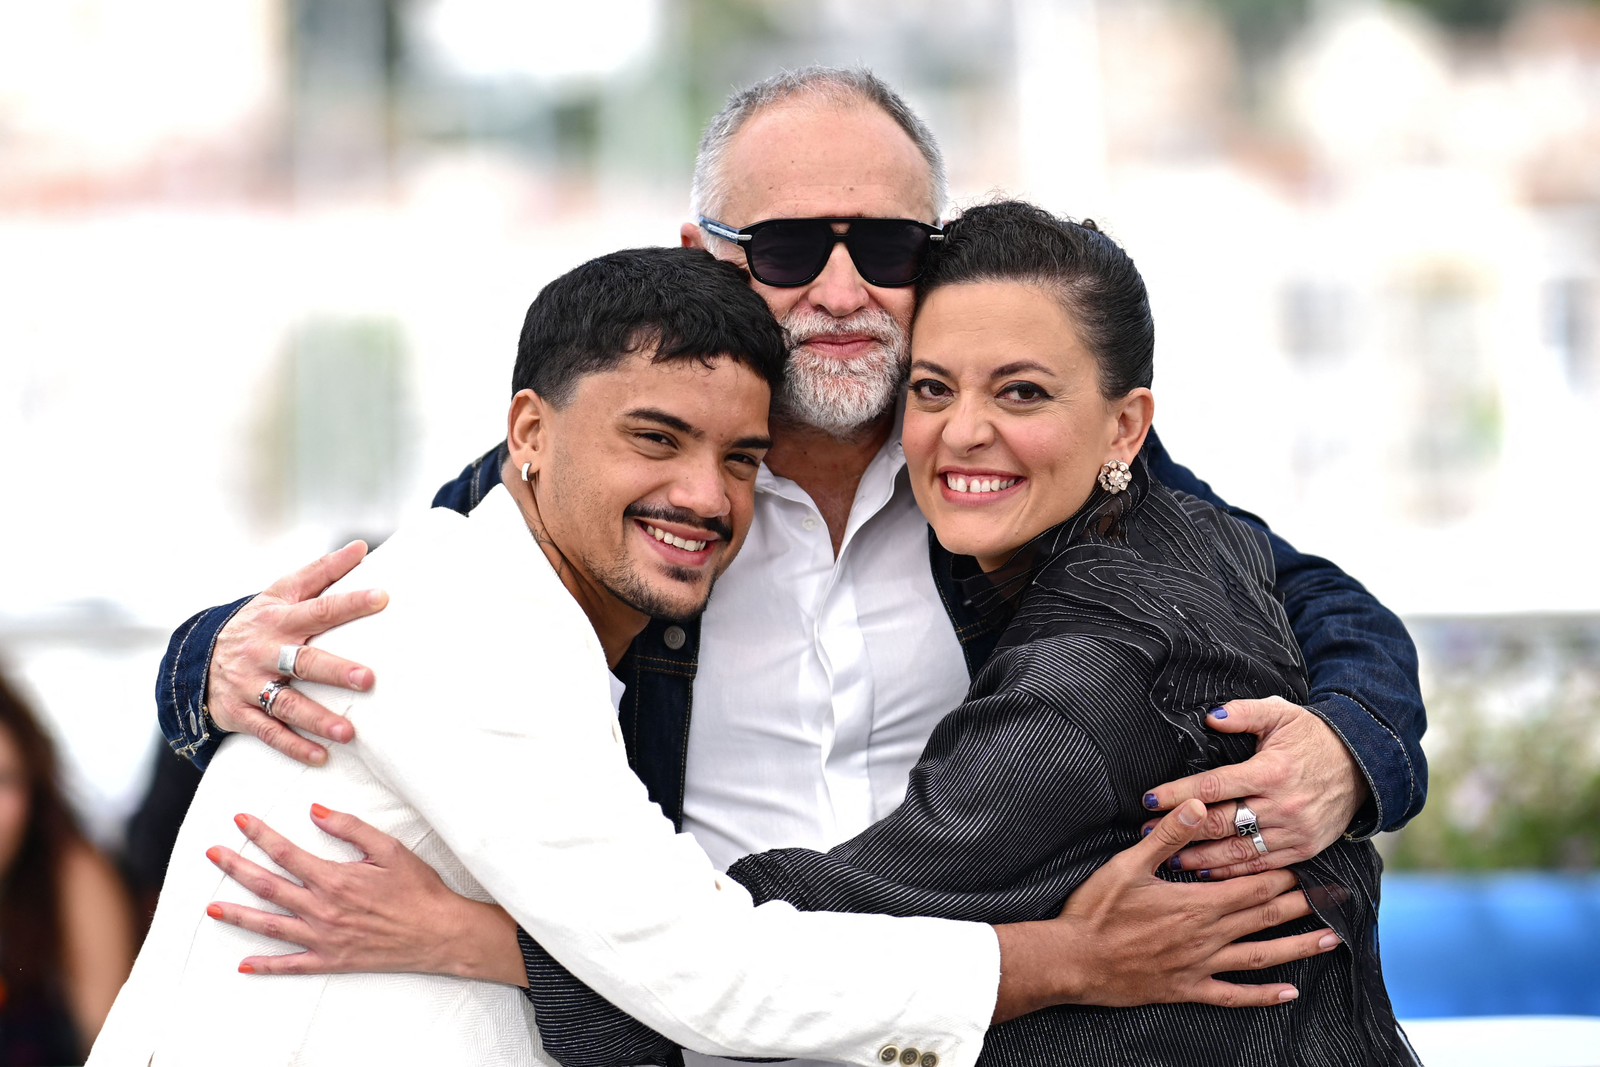 Iago Xavier e Nataly Rocha abraçando o diretor Karim Ainouz. — Foto: LOIC VENANCE / AFP